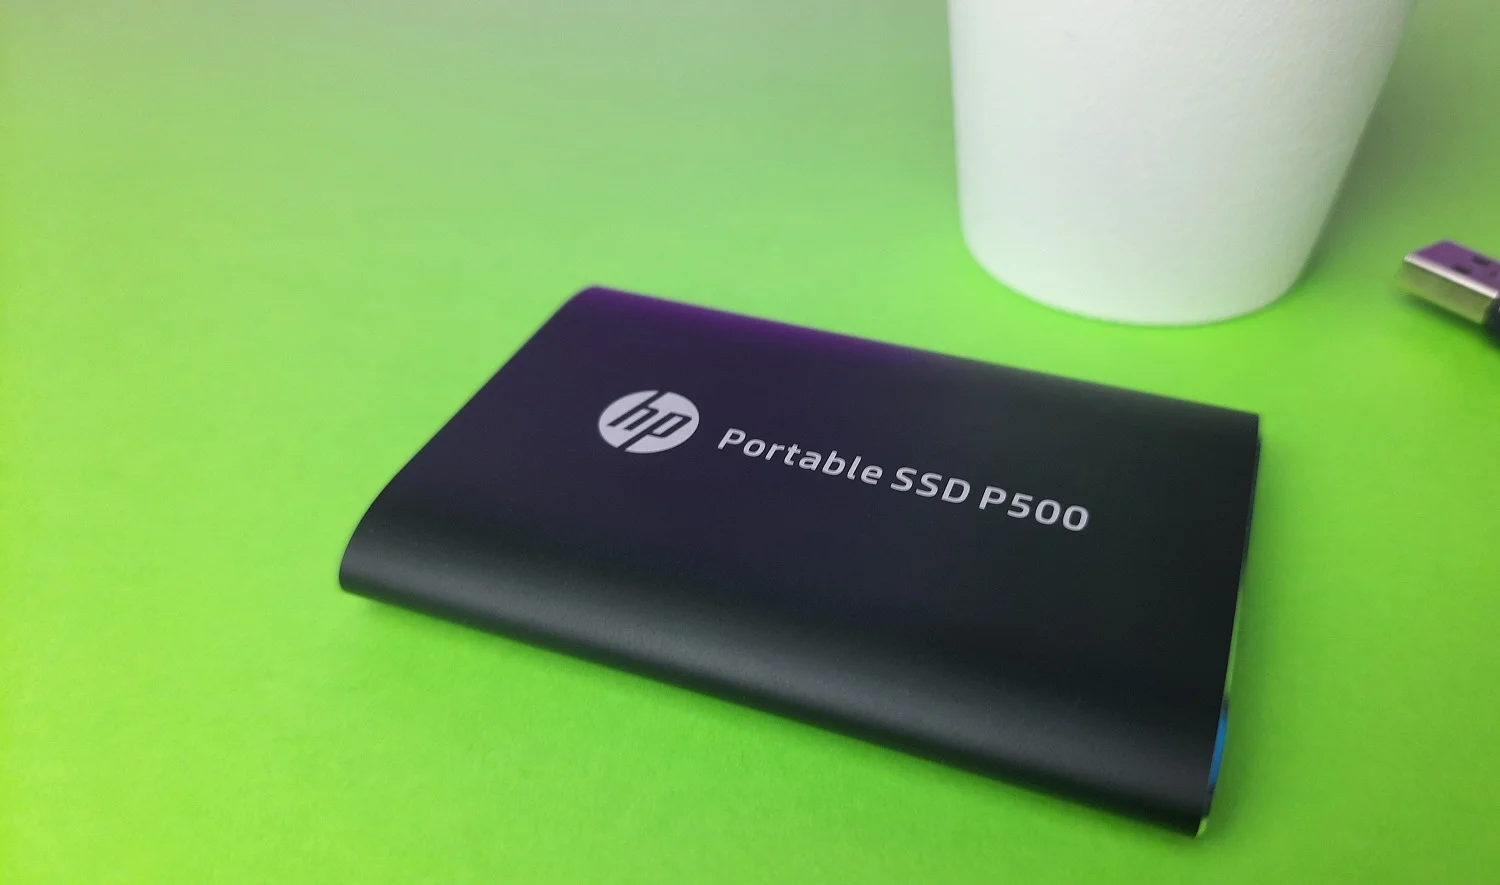 Обзор HP Portable SSD P500: как работает бюджетный карманный внешний SSD-диск